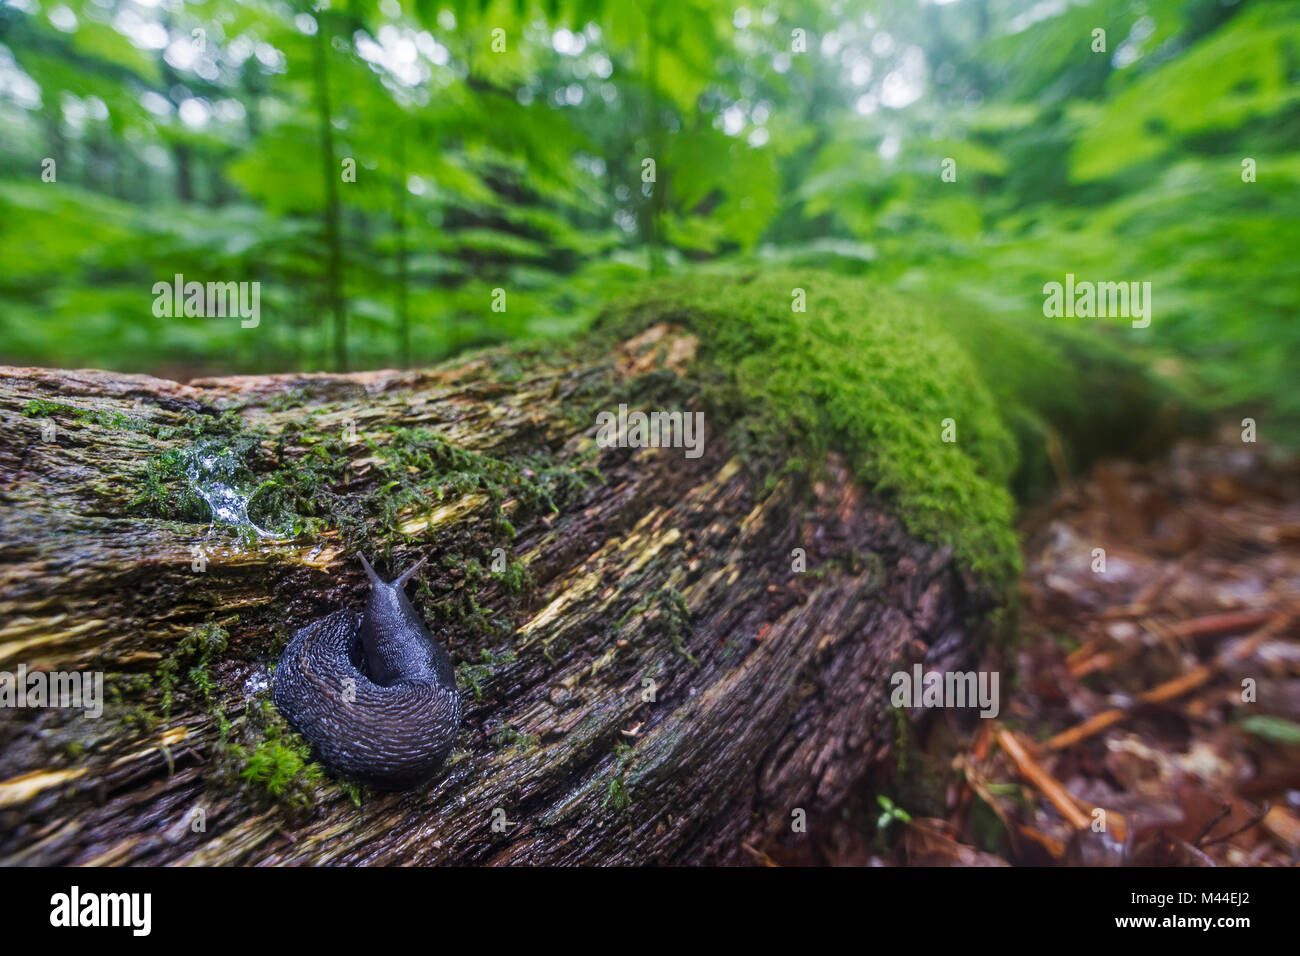 Black Keel Back Slug (Limax cinereoniger), the largest European land slug, on an oak tree trunk. Germany Stock Photo